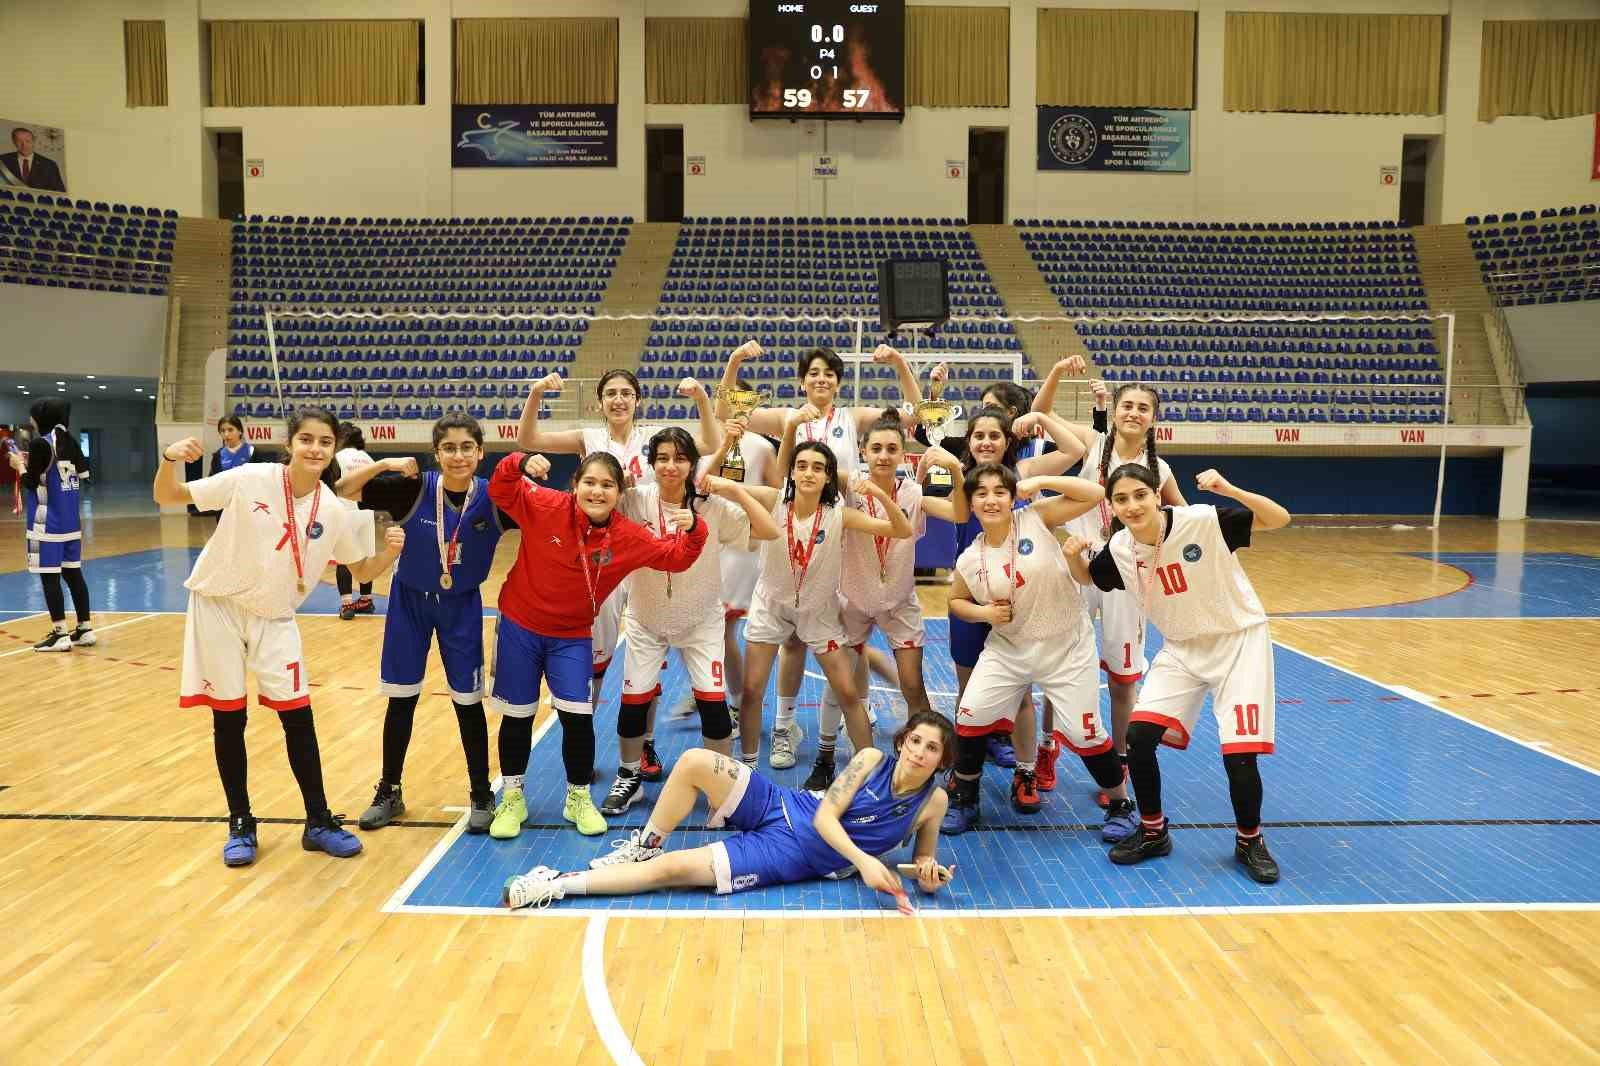 U14 ve U16 Kızlar Basketbol Şampiyonu İpekyolu Belediyesi Spor Kulübü oldu